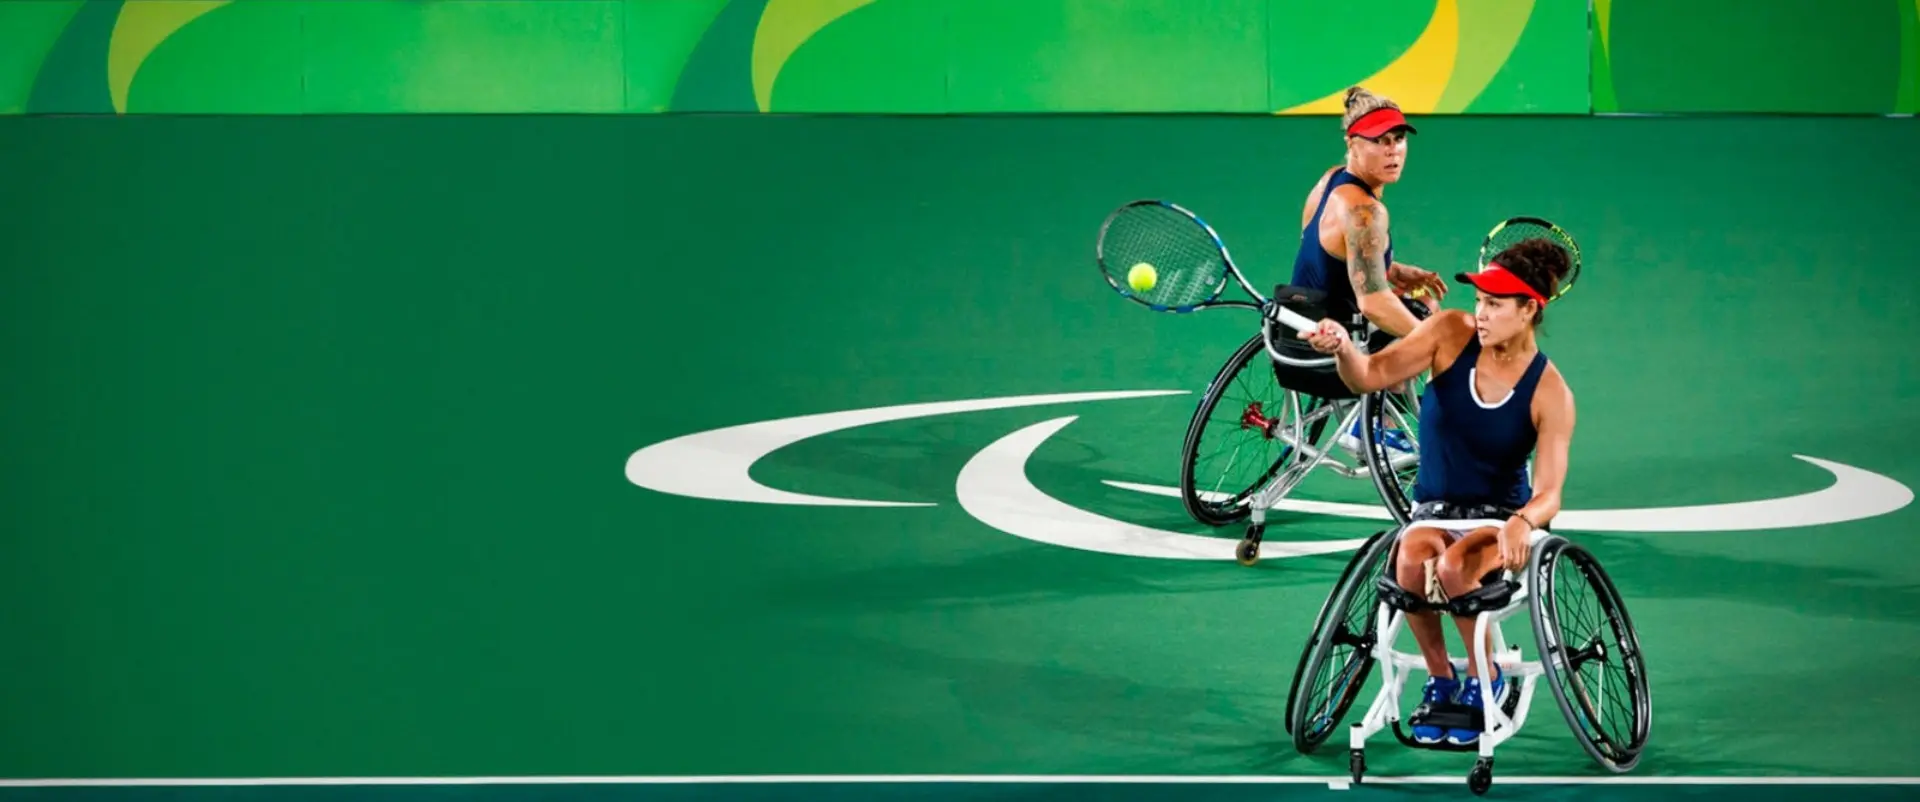 silla de ruedas para jugar tenis - Qué diferencia hay entre el tenis y el tenis en silla de ruedas